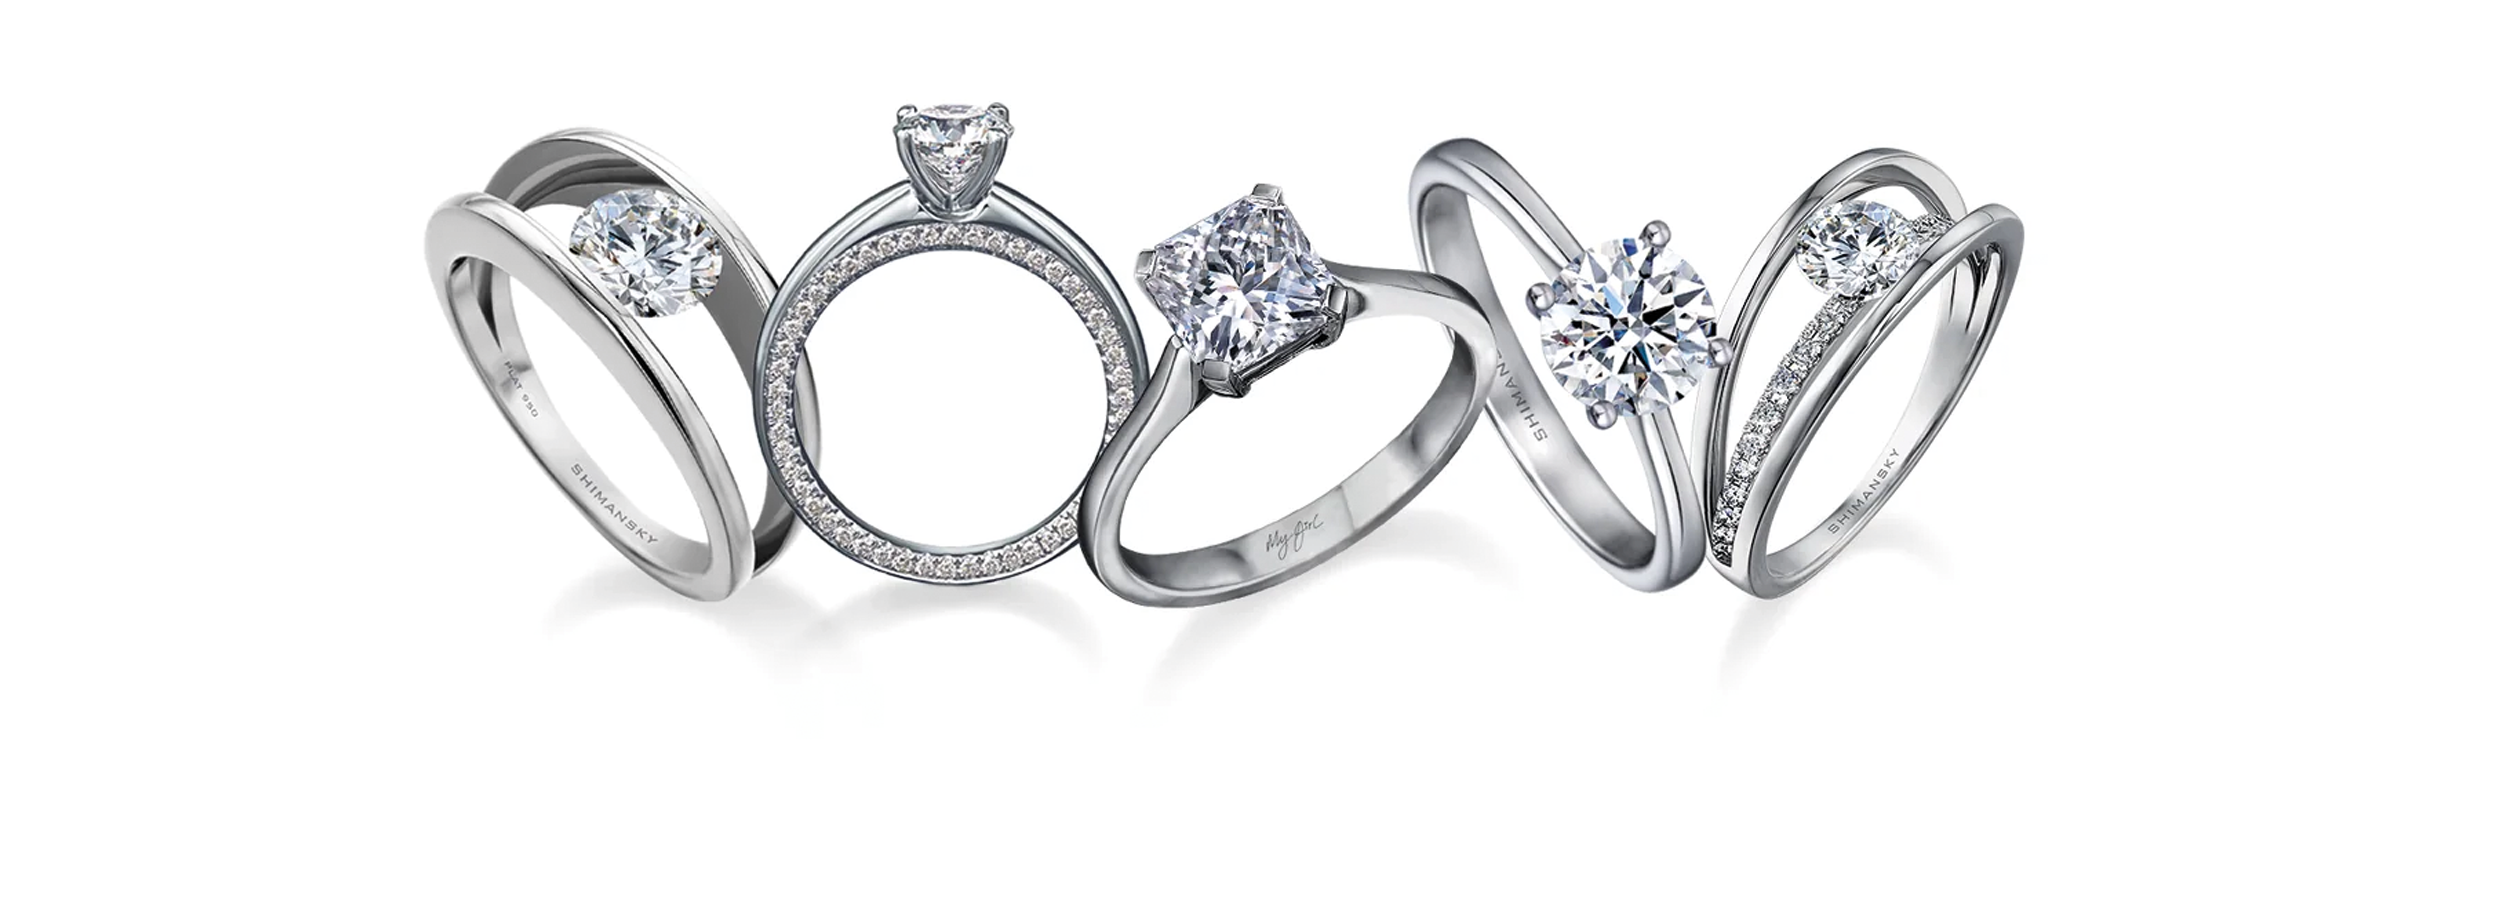 Assortment of Shimansky Diamond Engagement Rings